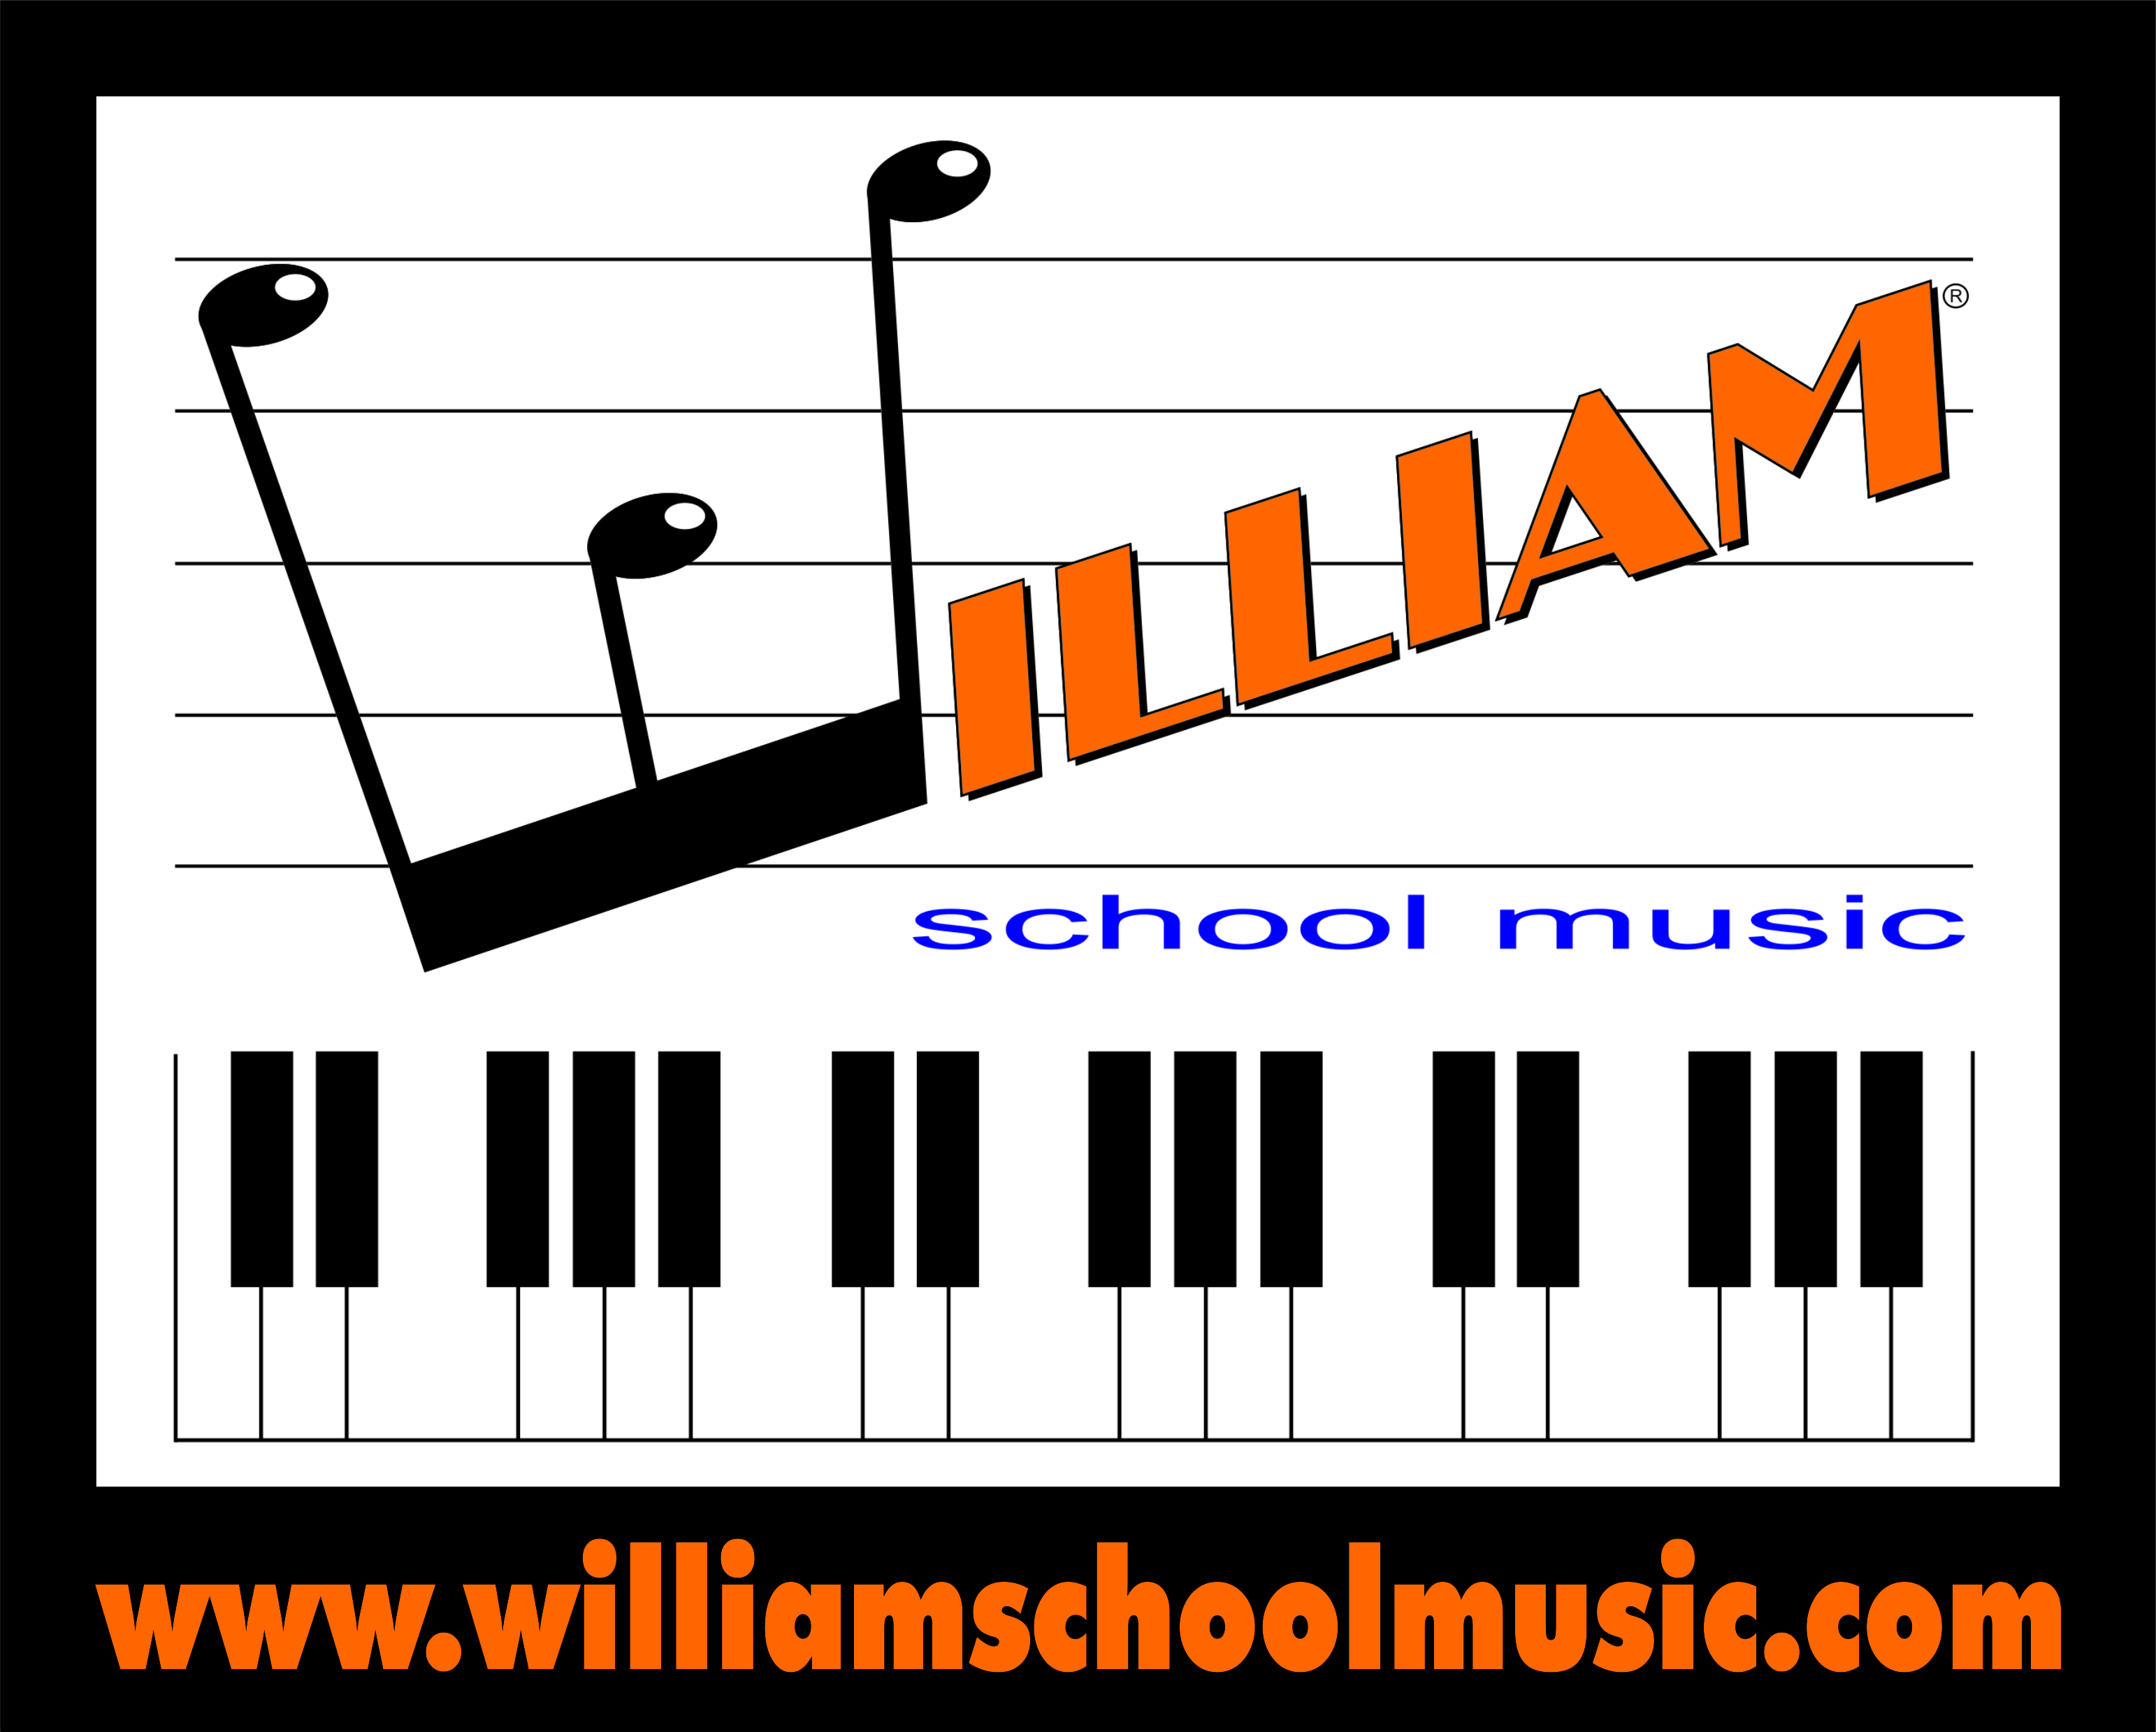 Foto 6 - William School Music, la 1^ scuola di musica CARDIOPROTETTA!